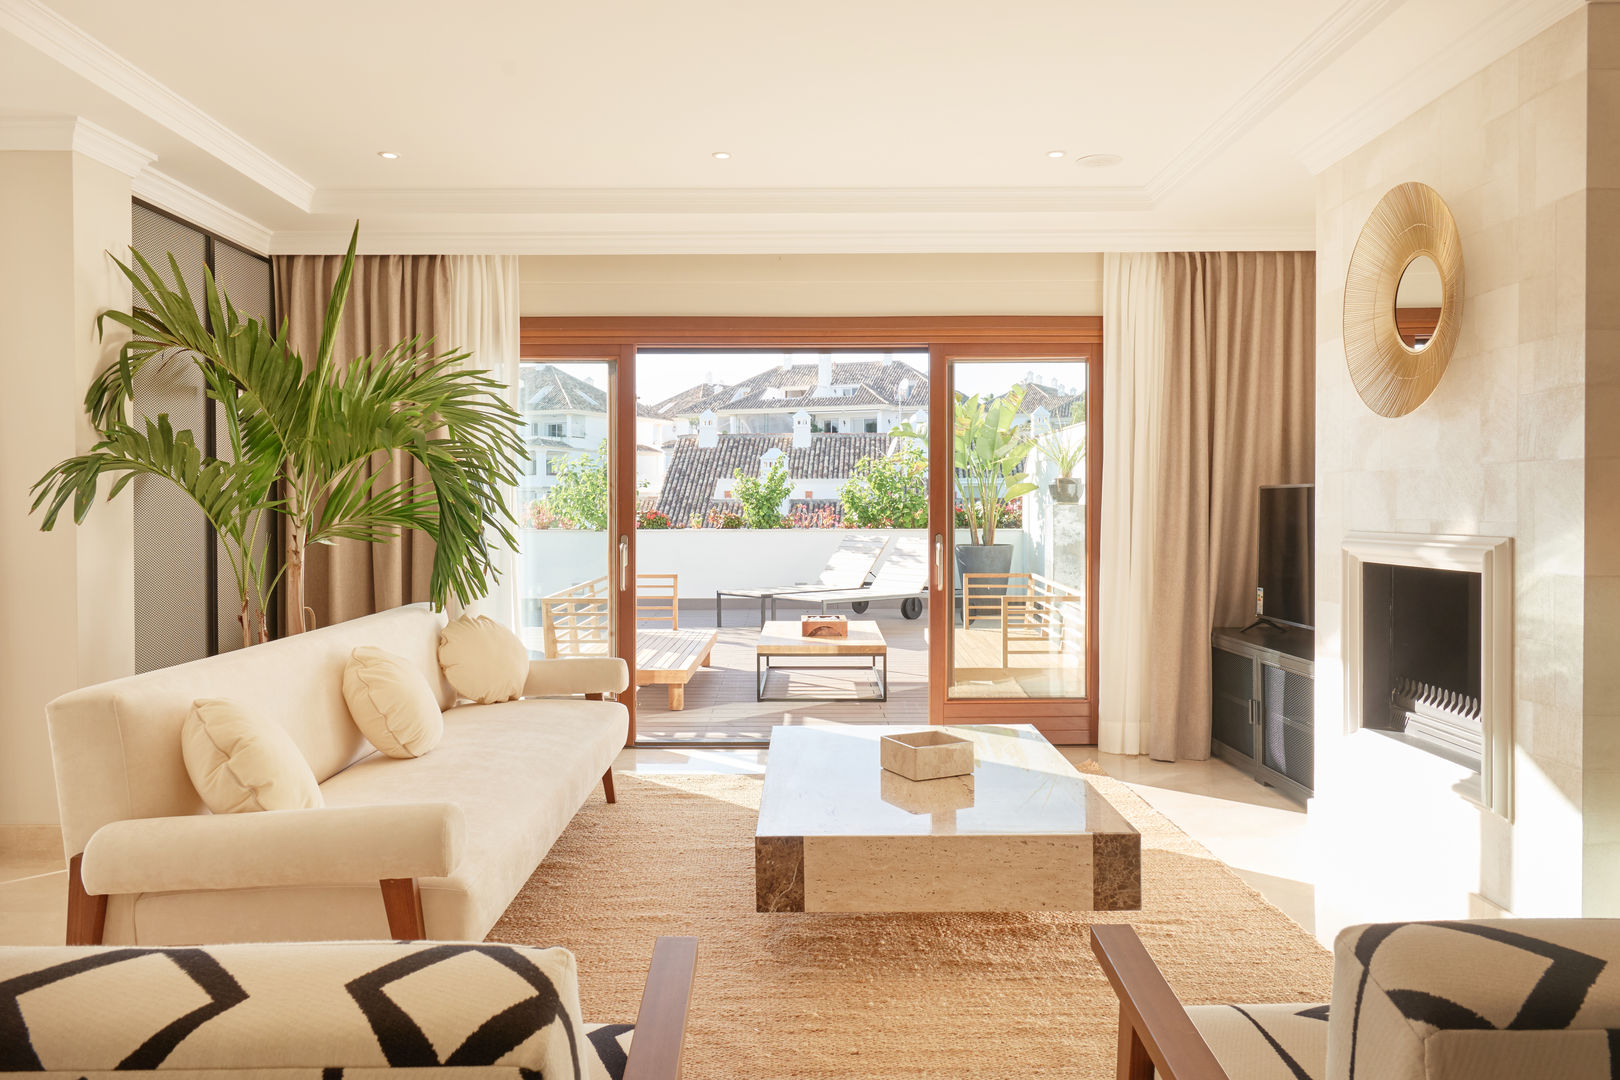 Por 90.000€ Vive en una Casa que parece Hotel [Incluye una terraza bellísima], Beatriz Saiz Interiorismo Beatriz Saiz Interiorismo Salones de estilo minimalista